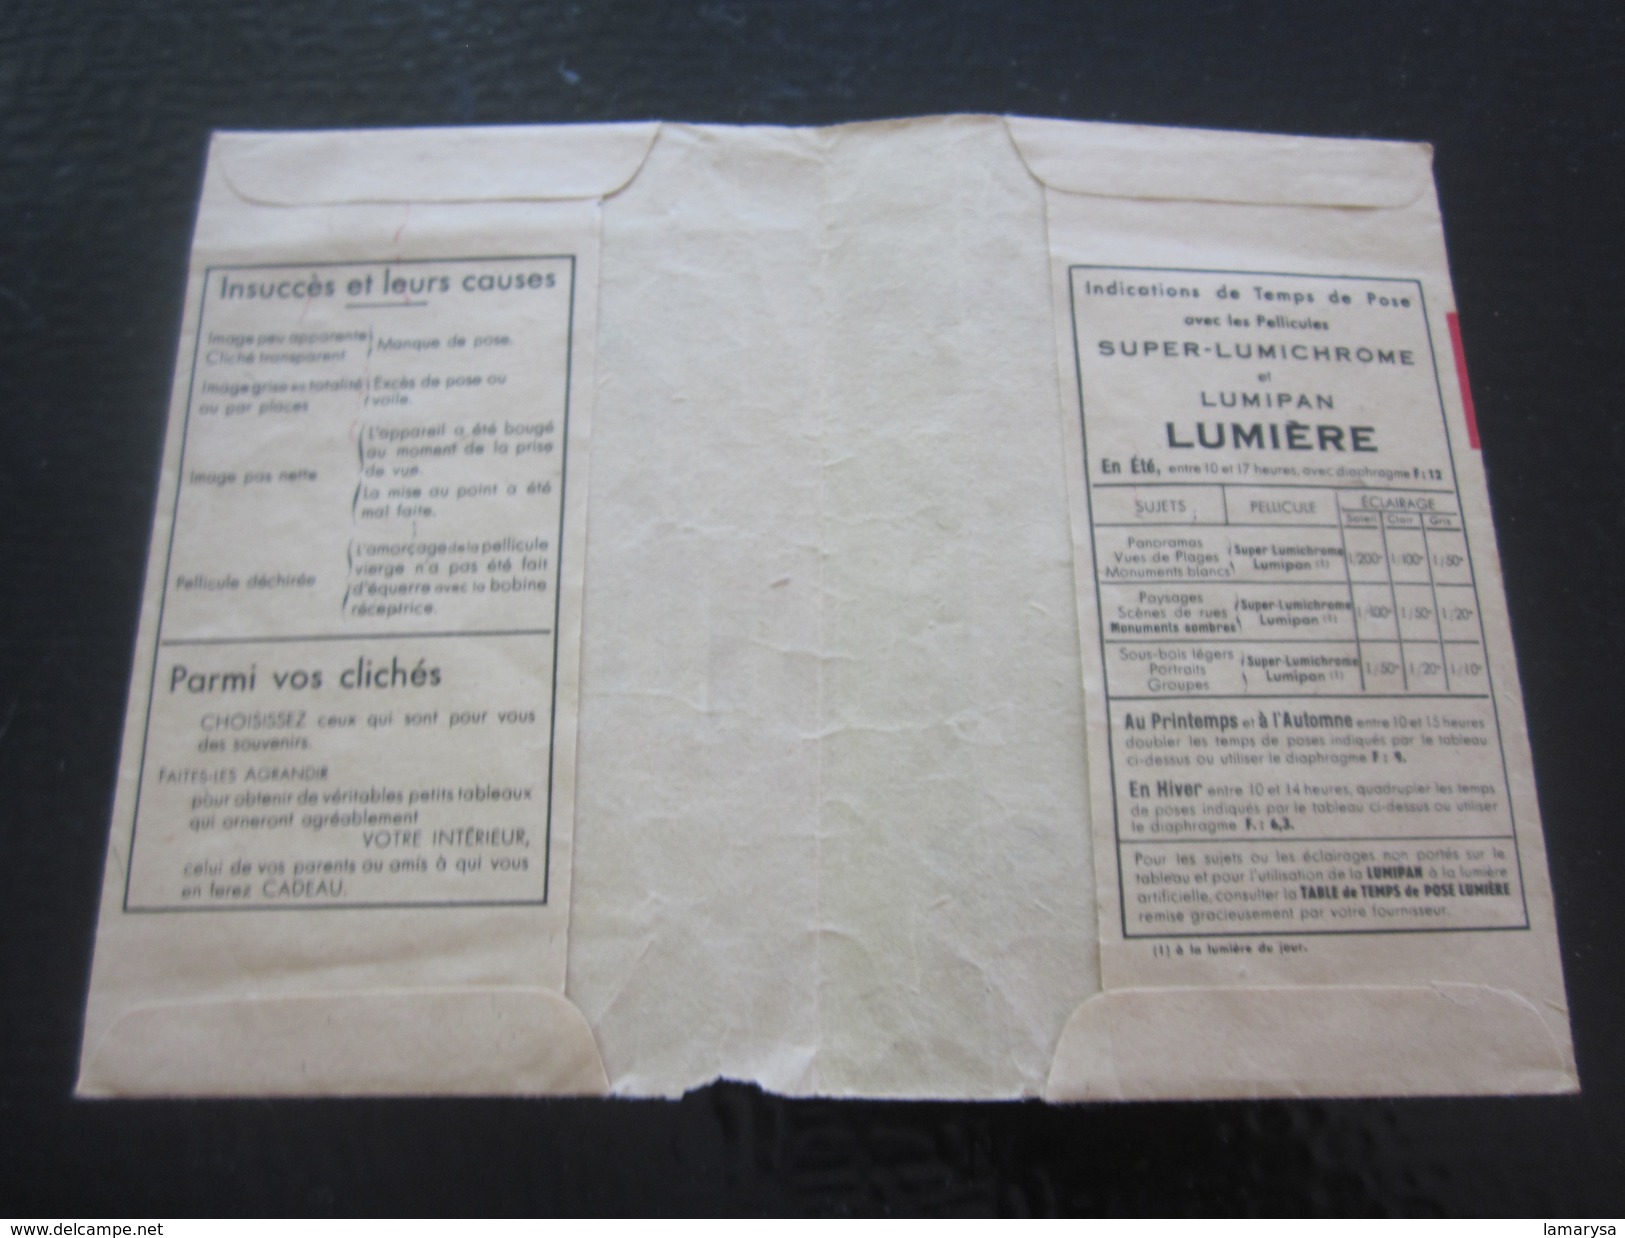 Photographie-1931 Ancienne Pochette Lumichrome "LUMIÈRE" Illustrée (vide)Pour Photos---Matériel - Matériel & Accessoires